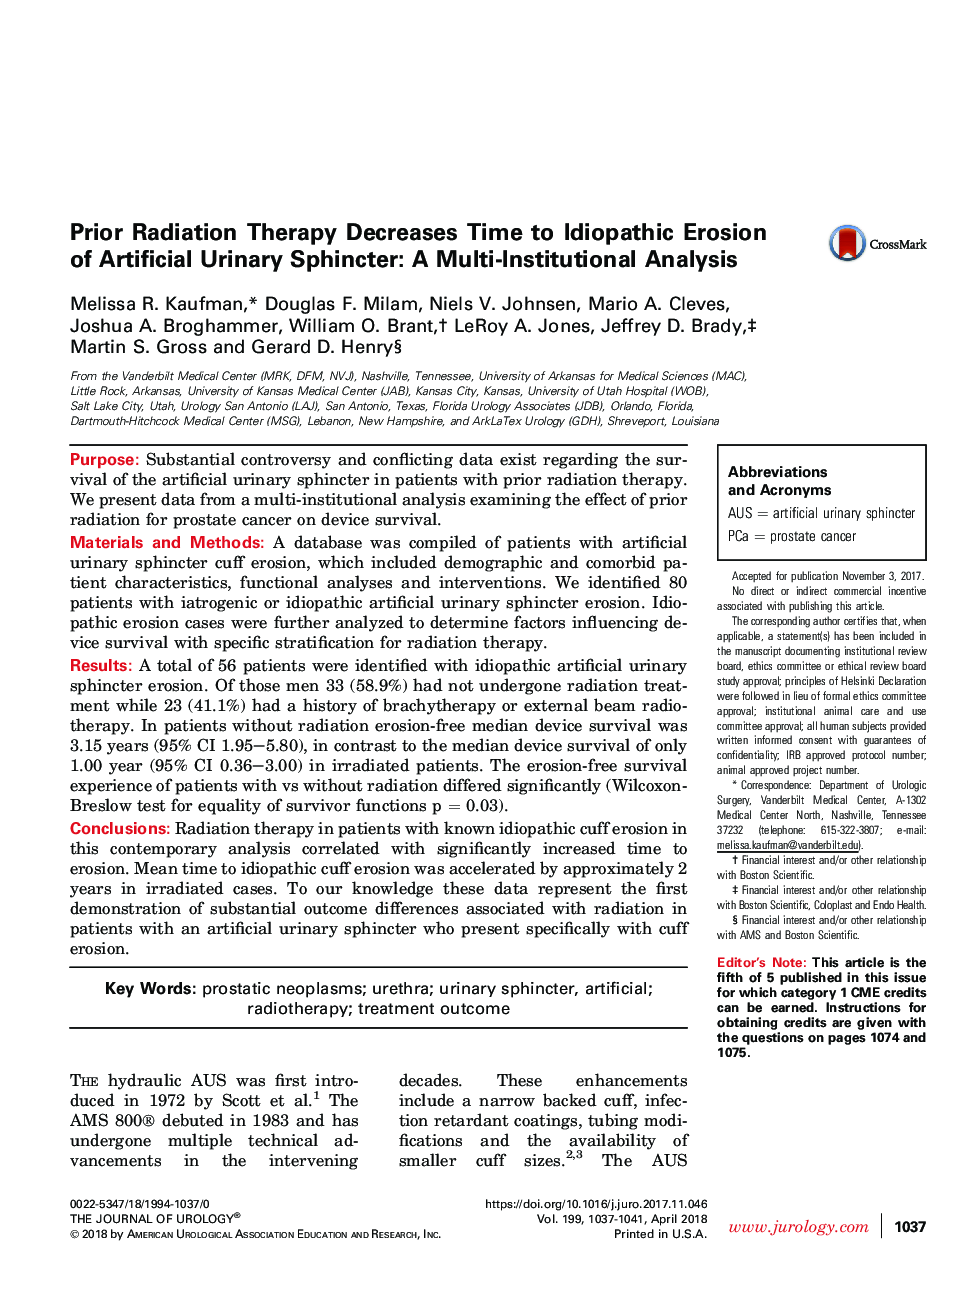 درمان پرتو درمانی قبل از بروز فرسایش ایدیوپاتی اسفنکتر ادراری مصنوعی کاهش می یابد: یک تحلیل چندعالم 